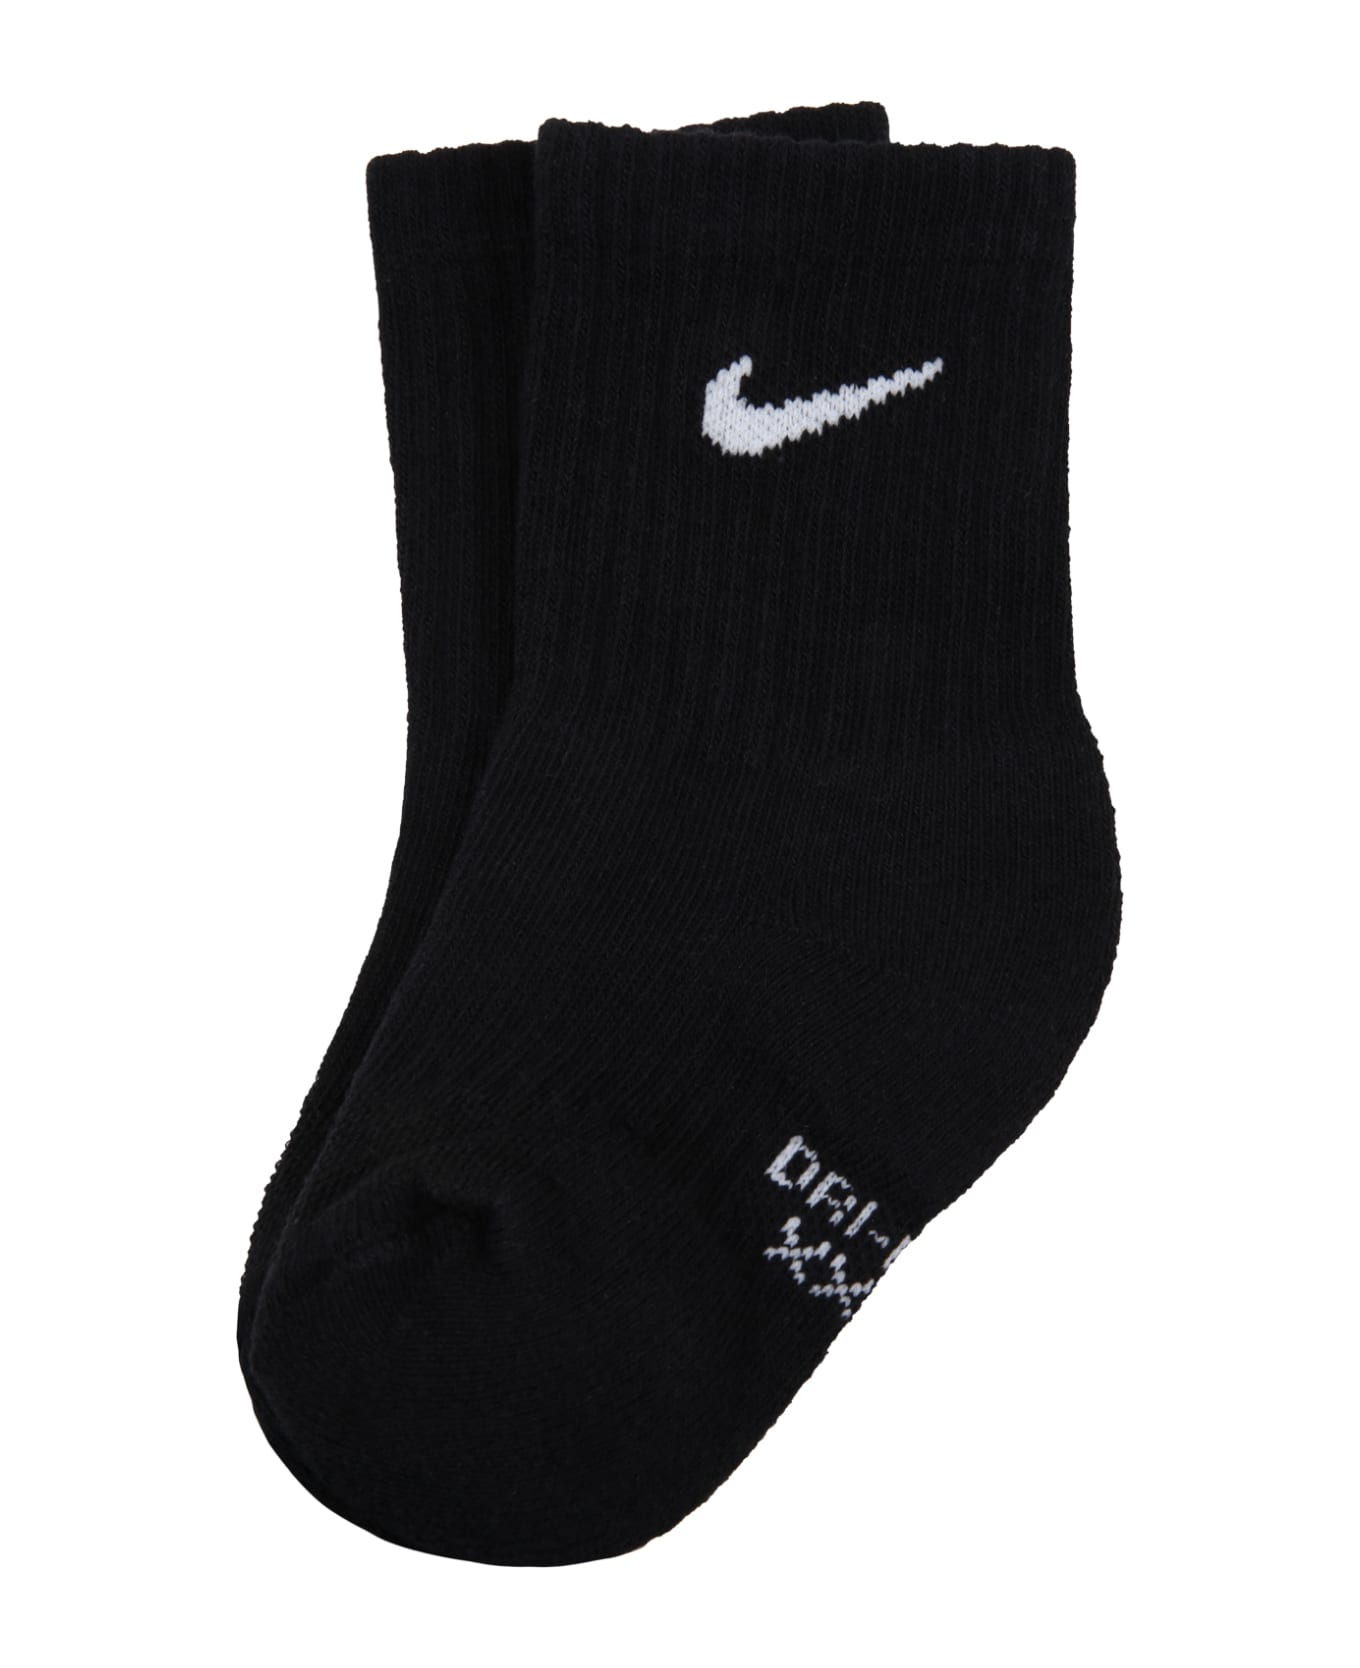 Nike Black Socks For Kids With White Logo - Black アンダーウェア